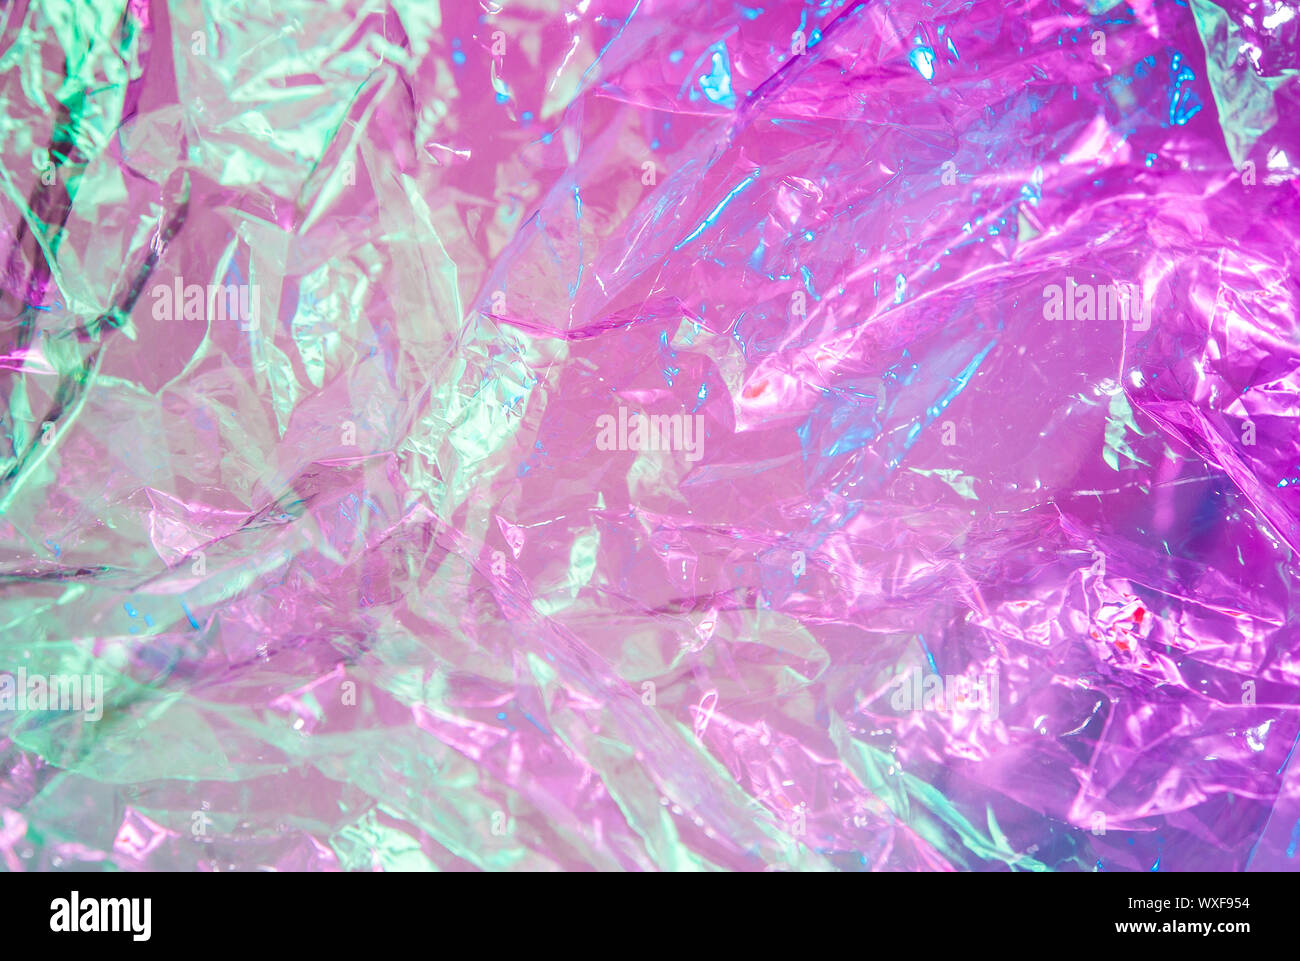 Holographische Hintergrund im Stil der 80-90 Jahre. Echten Textur von cellophan Film in hellen Säure Farben. Stockfoto